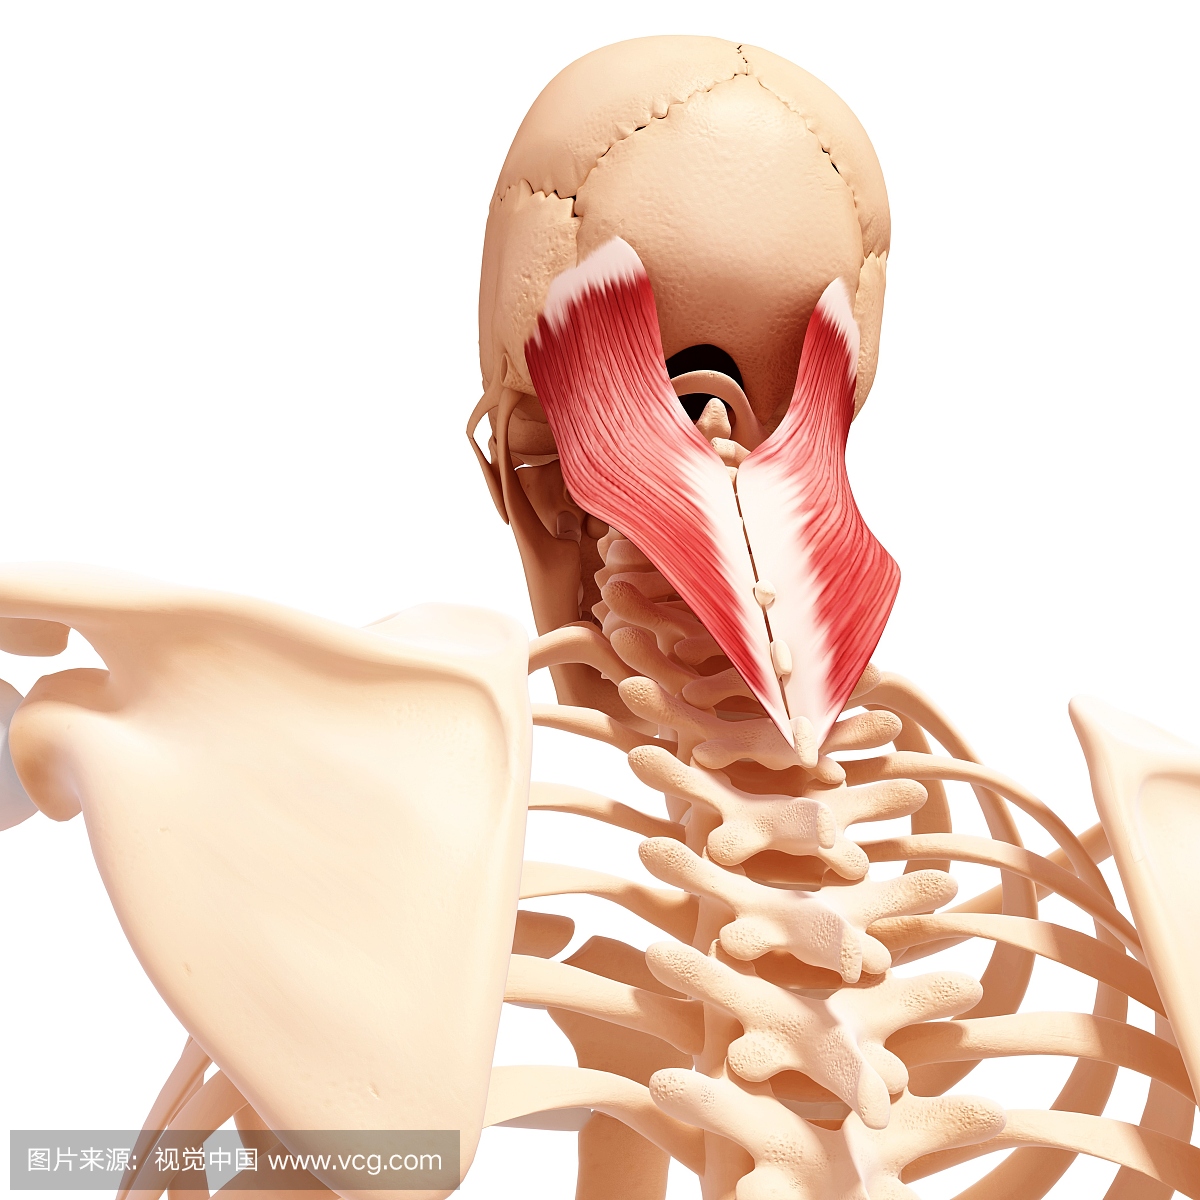 人类颈部肌肉组织,电脑艺术品。